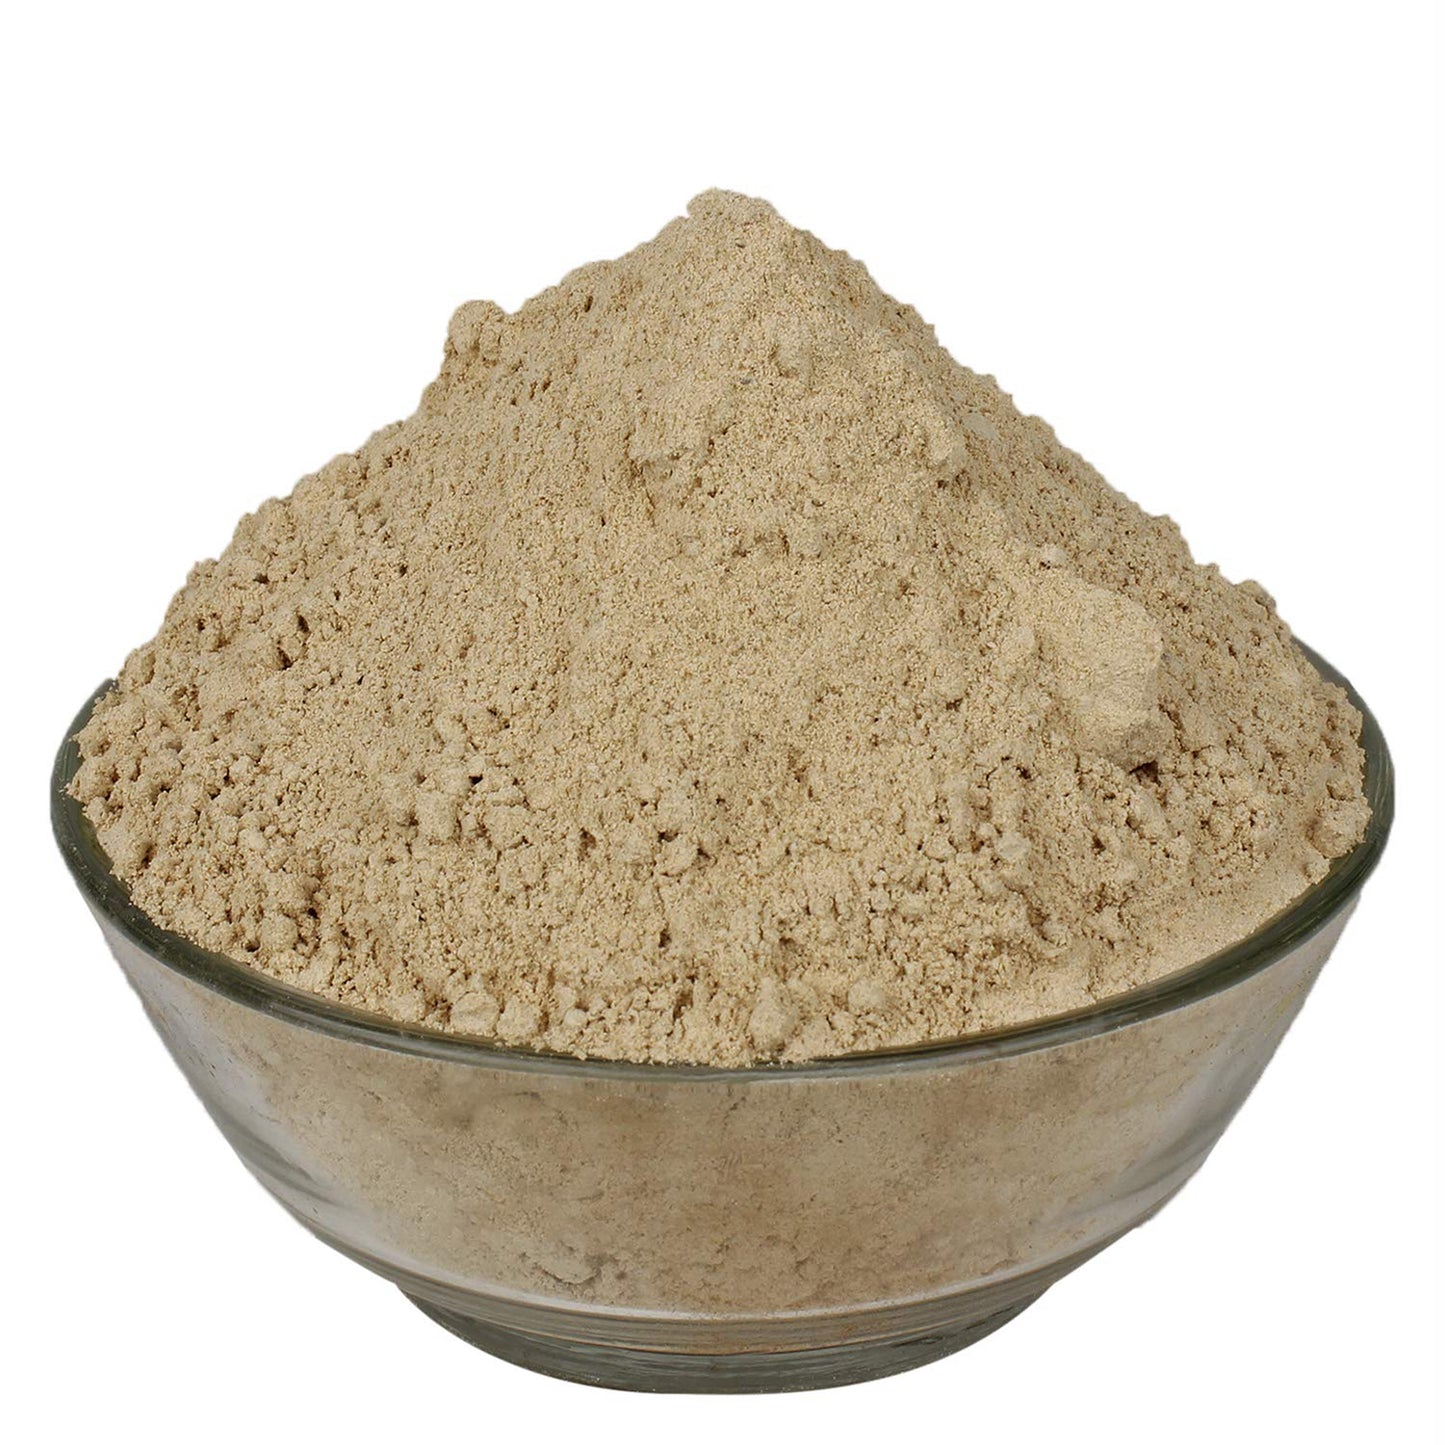 Musli Kali Powder - Curculigo Orchiodes - Black Musli Powder